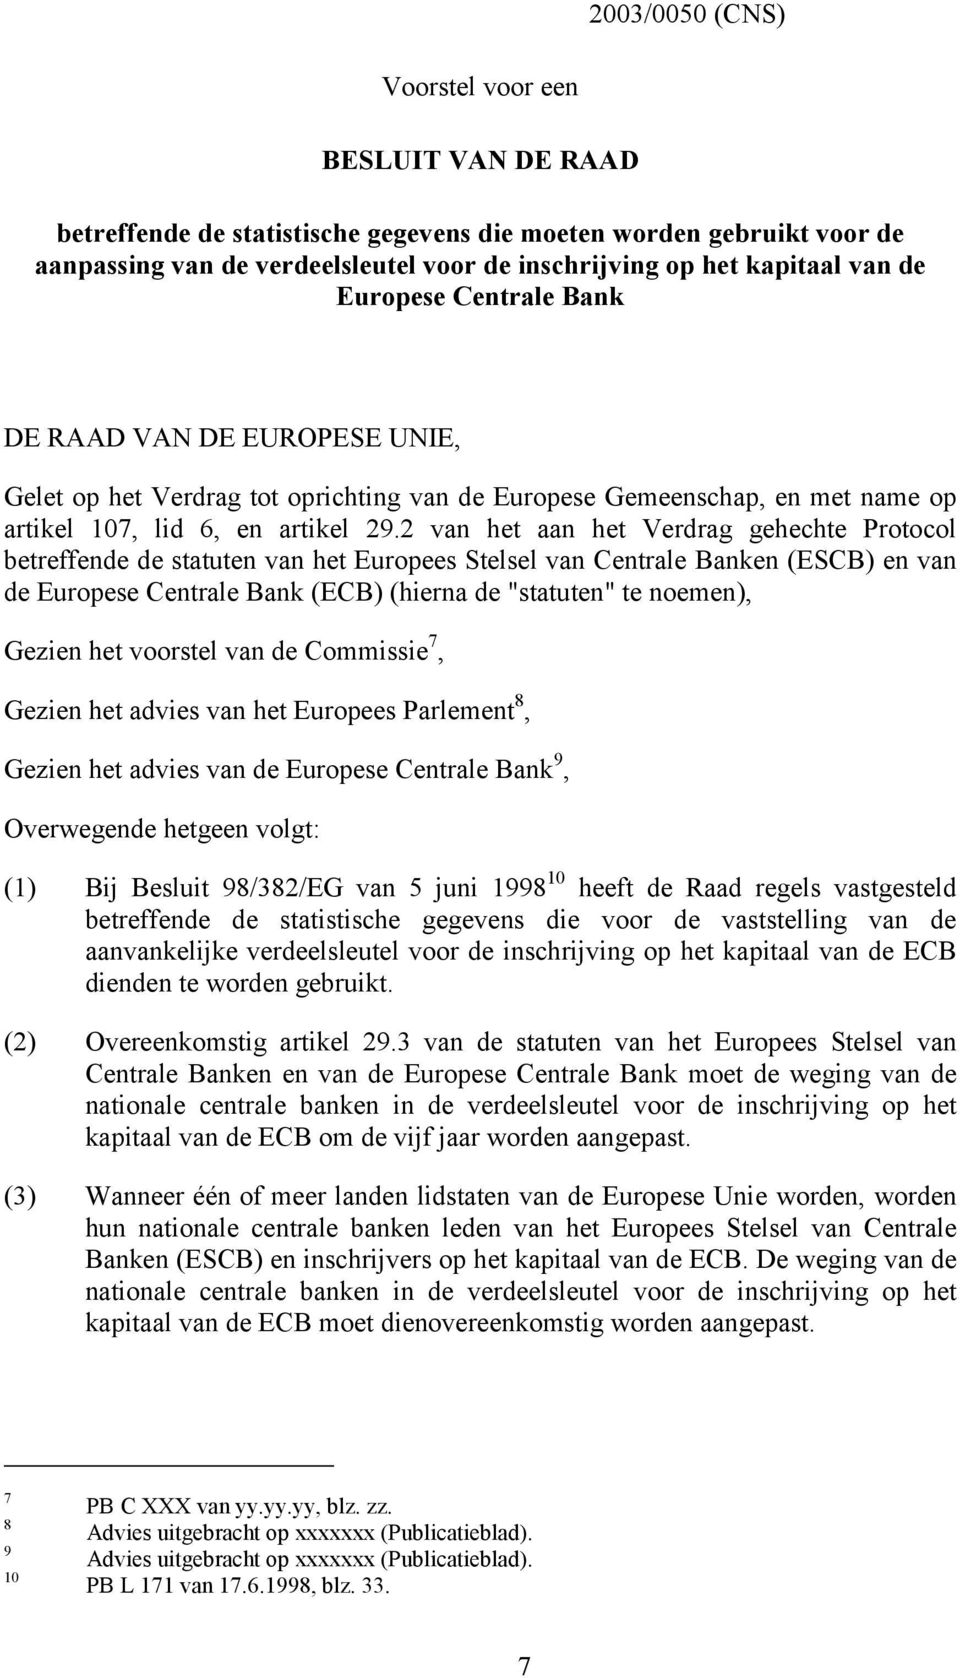 2 van het aan het Verdrag gehechte Protocol betreffende de statuten van het Europees Stelsel van Centrale Banken (ESCB) en van de Europese Centrale Bank (ECB) (hierna de "statuten" te noemen), Gezien